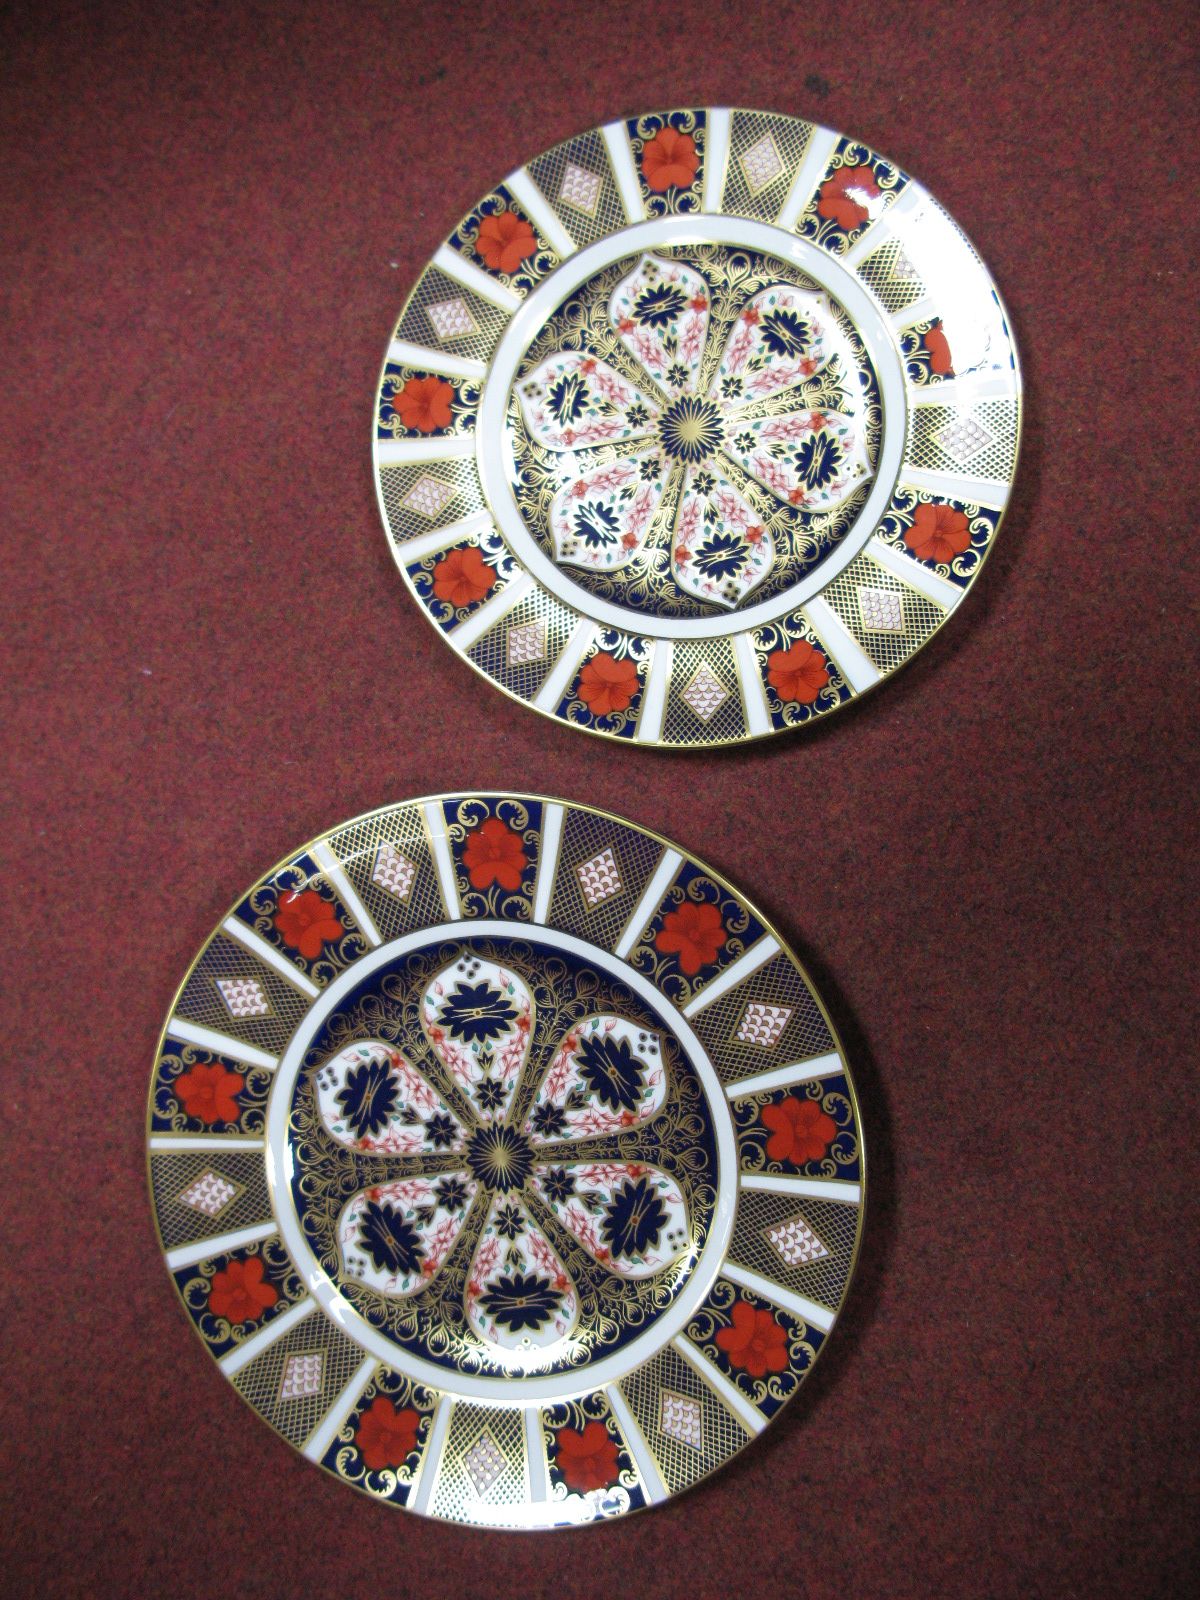 Two Royal Crown Derby "Imari" Pattern Plates, 1128 pattern.